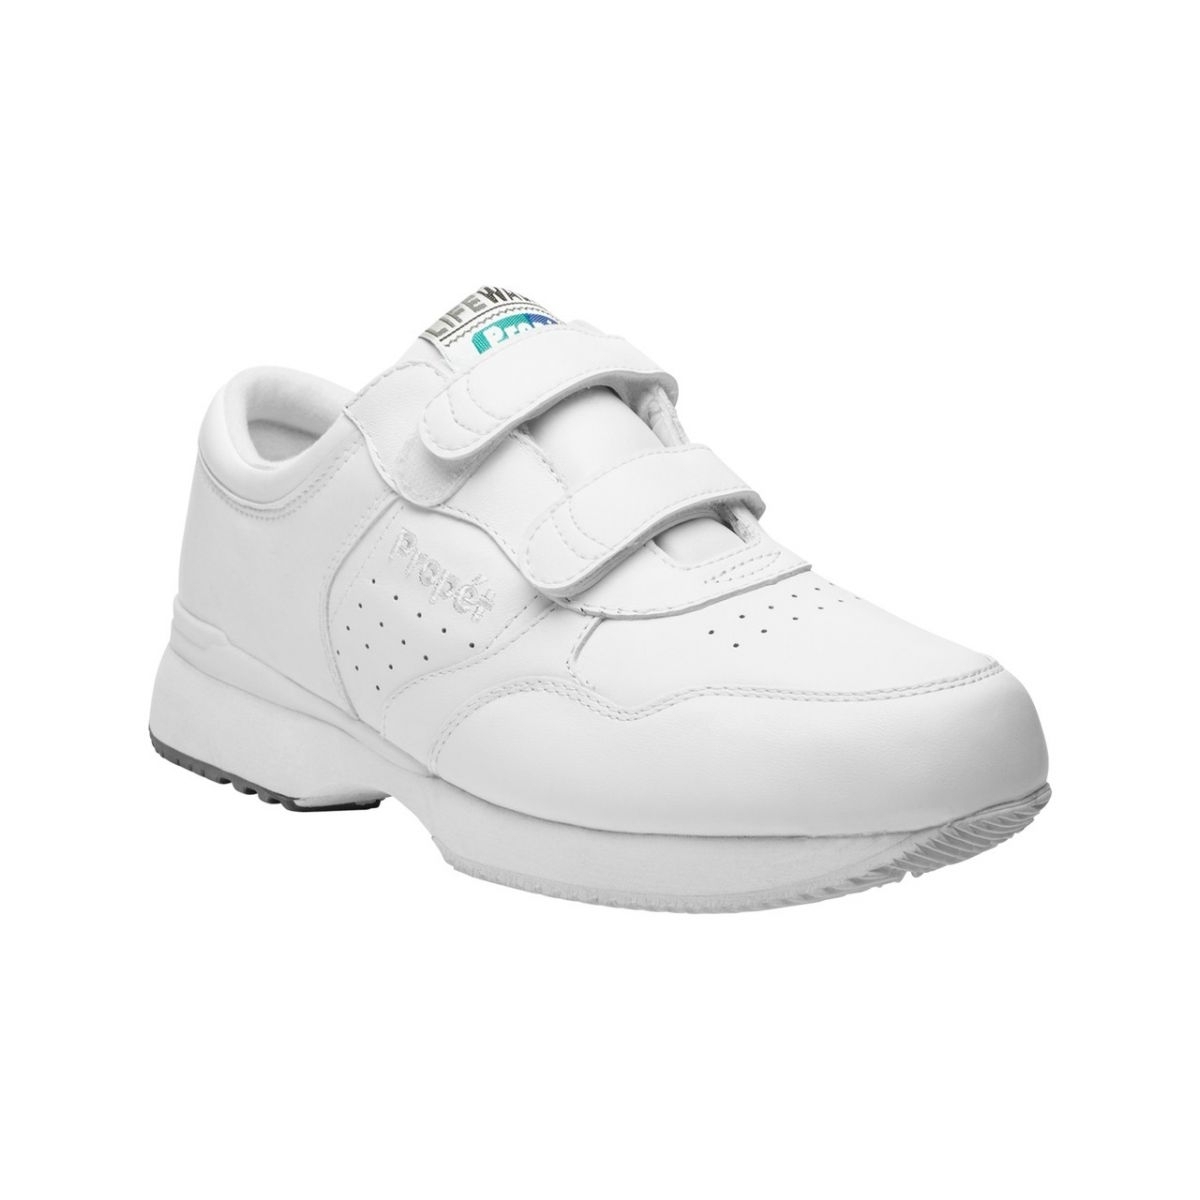 Propet Men's Life Walker Strap Shoe White - M3705WHT WHITE - WHITE, 10.5 X-Wide